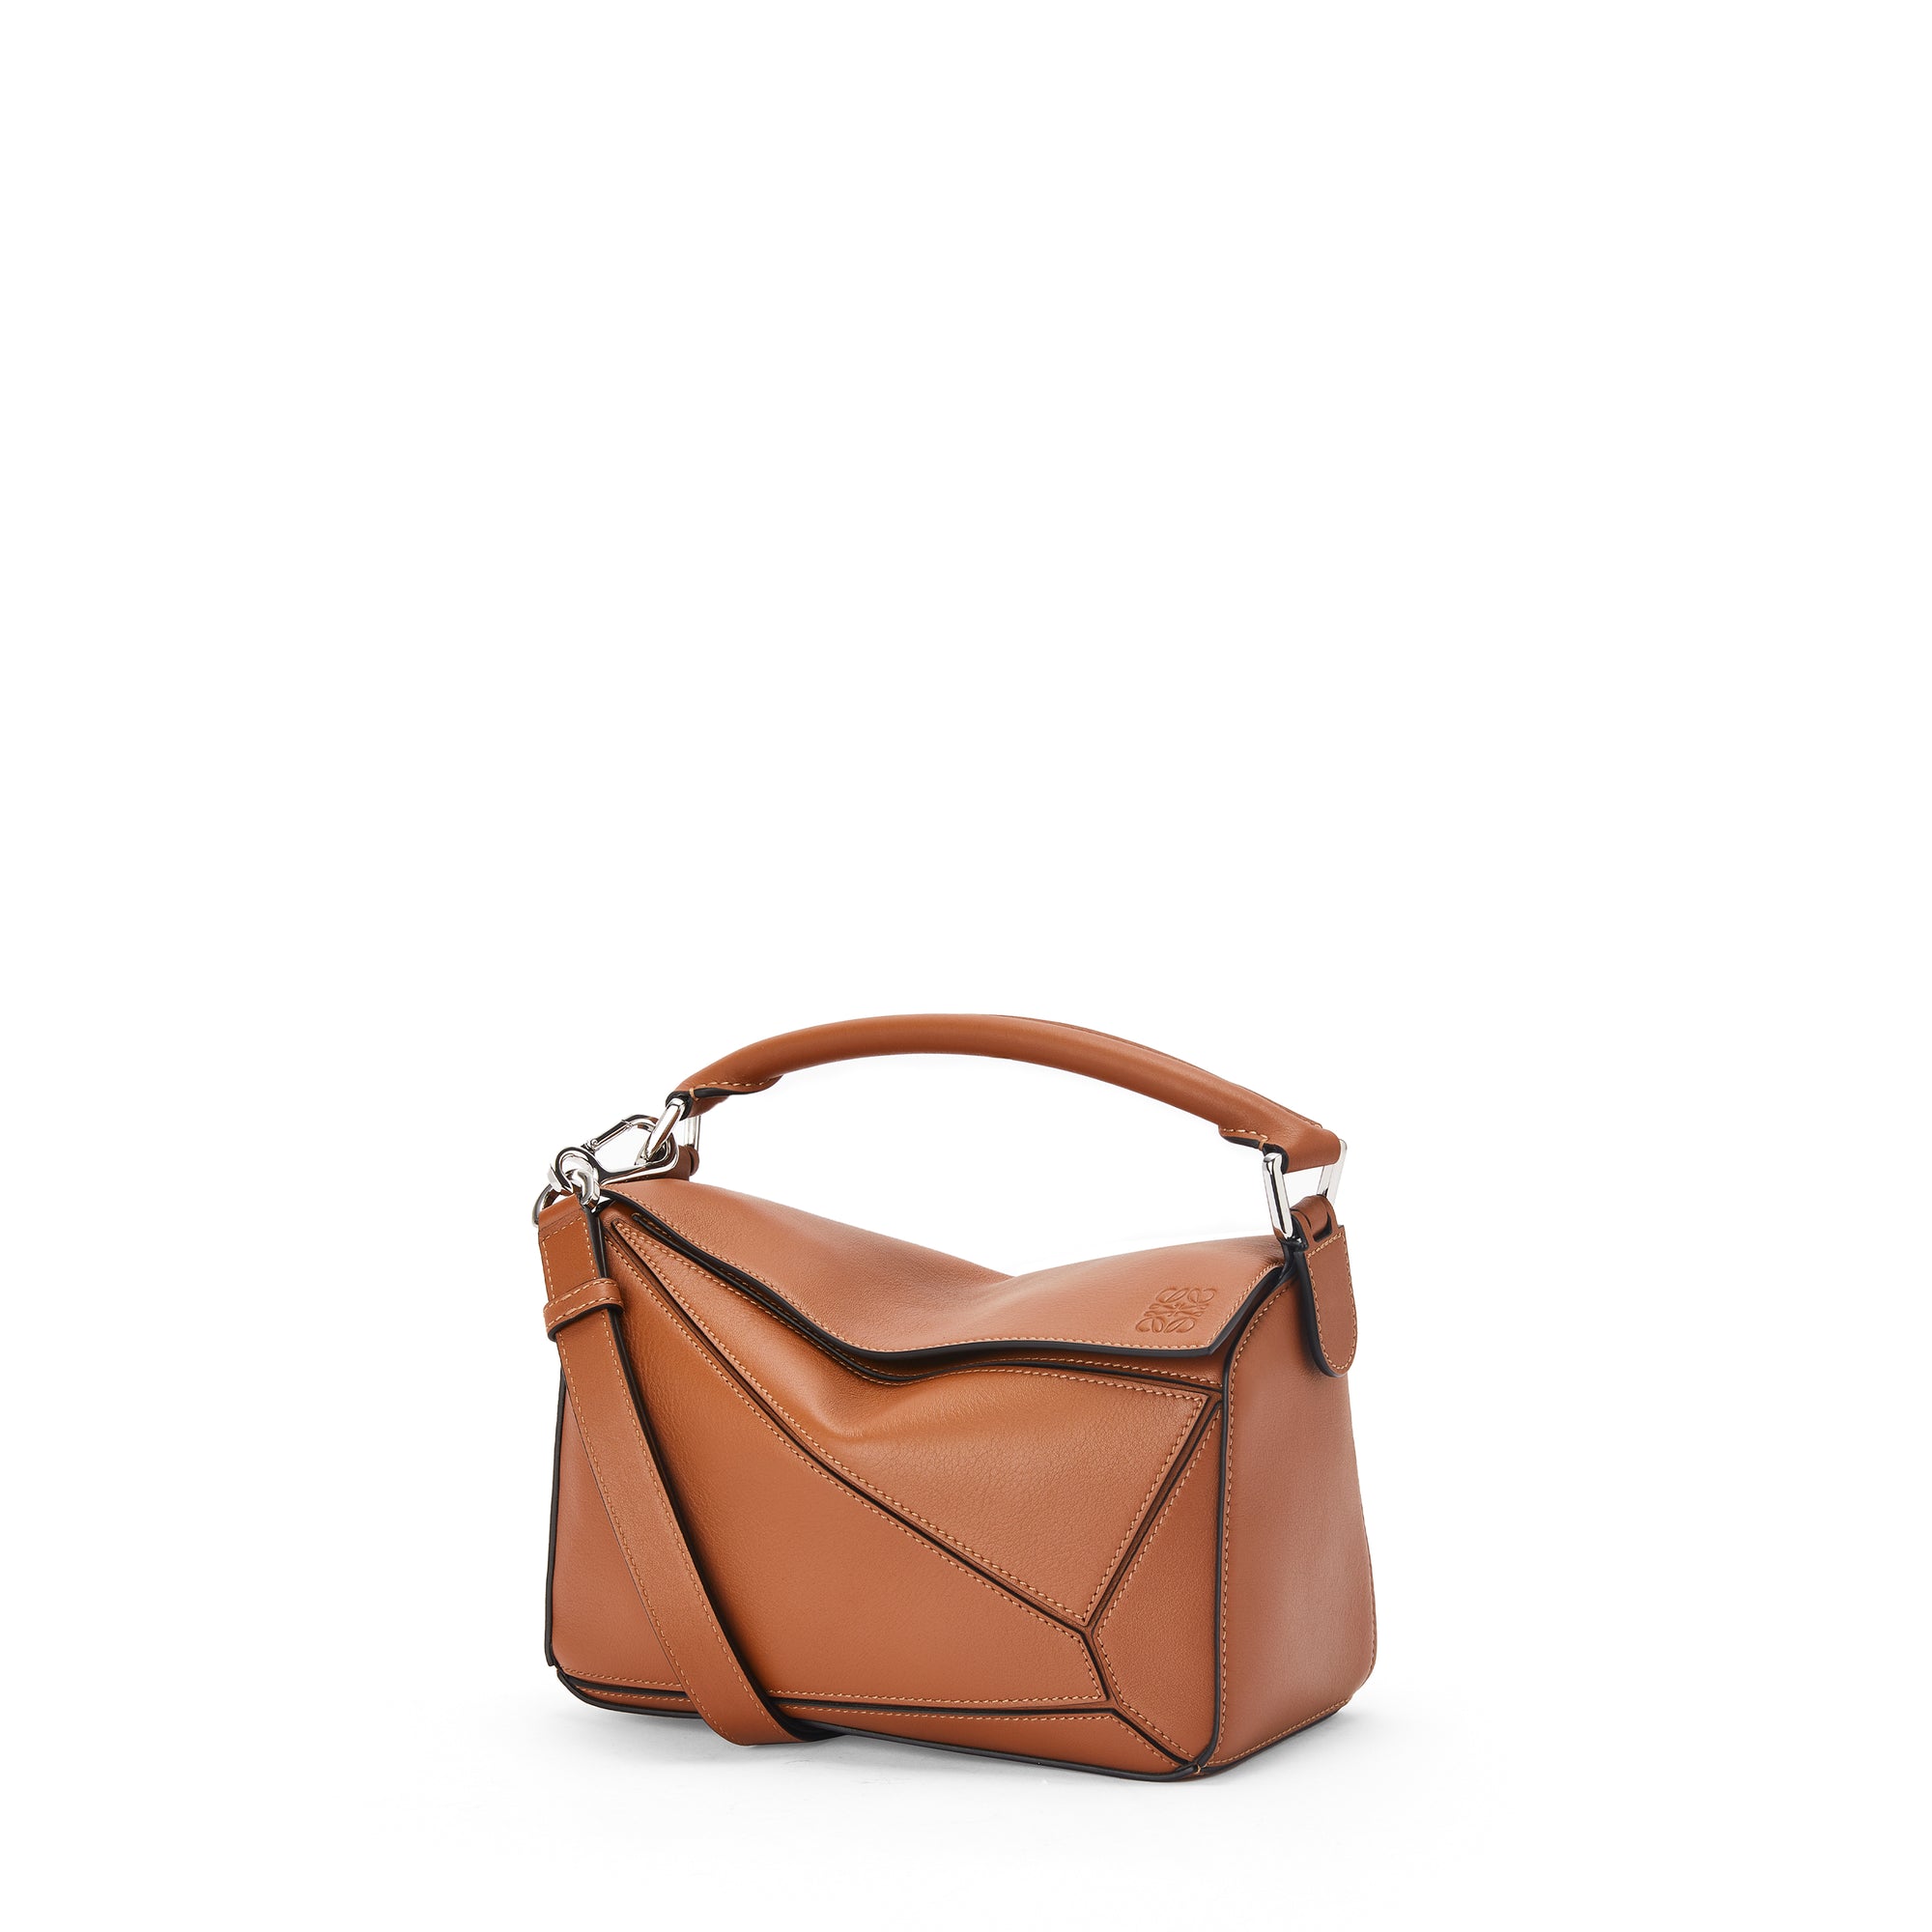 Loewe - Women’s Puzzle Small Bag - (Tan) view 1